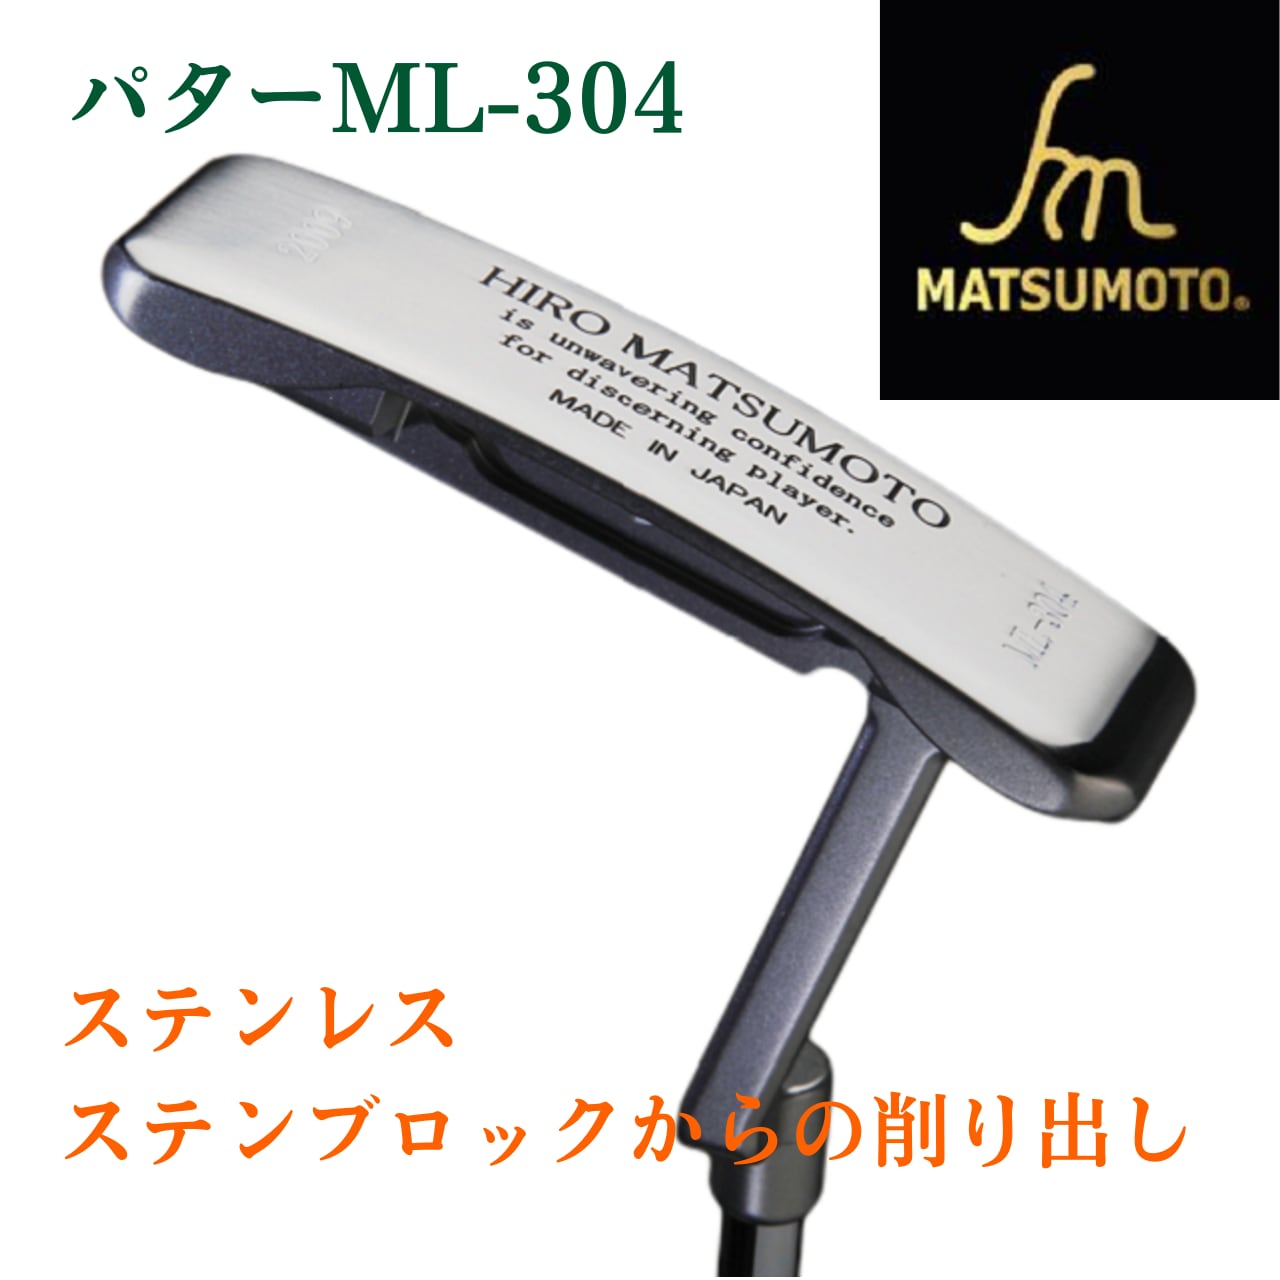 公式】銘匠ヒロマツモト ゴルフパター ML-304 2009 Premium model ピン ...